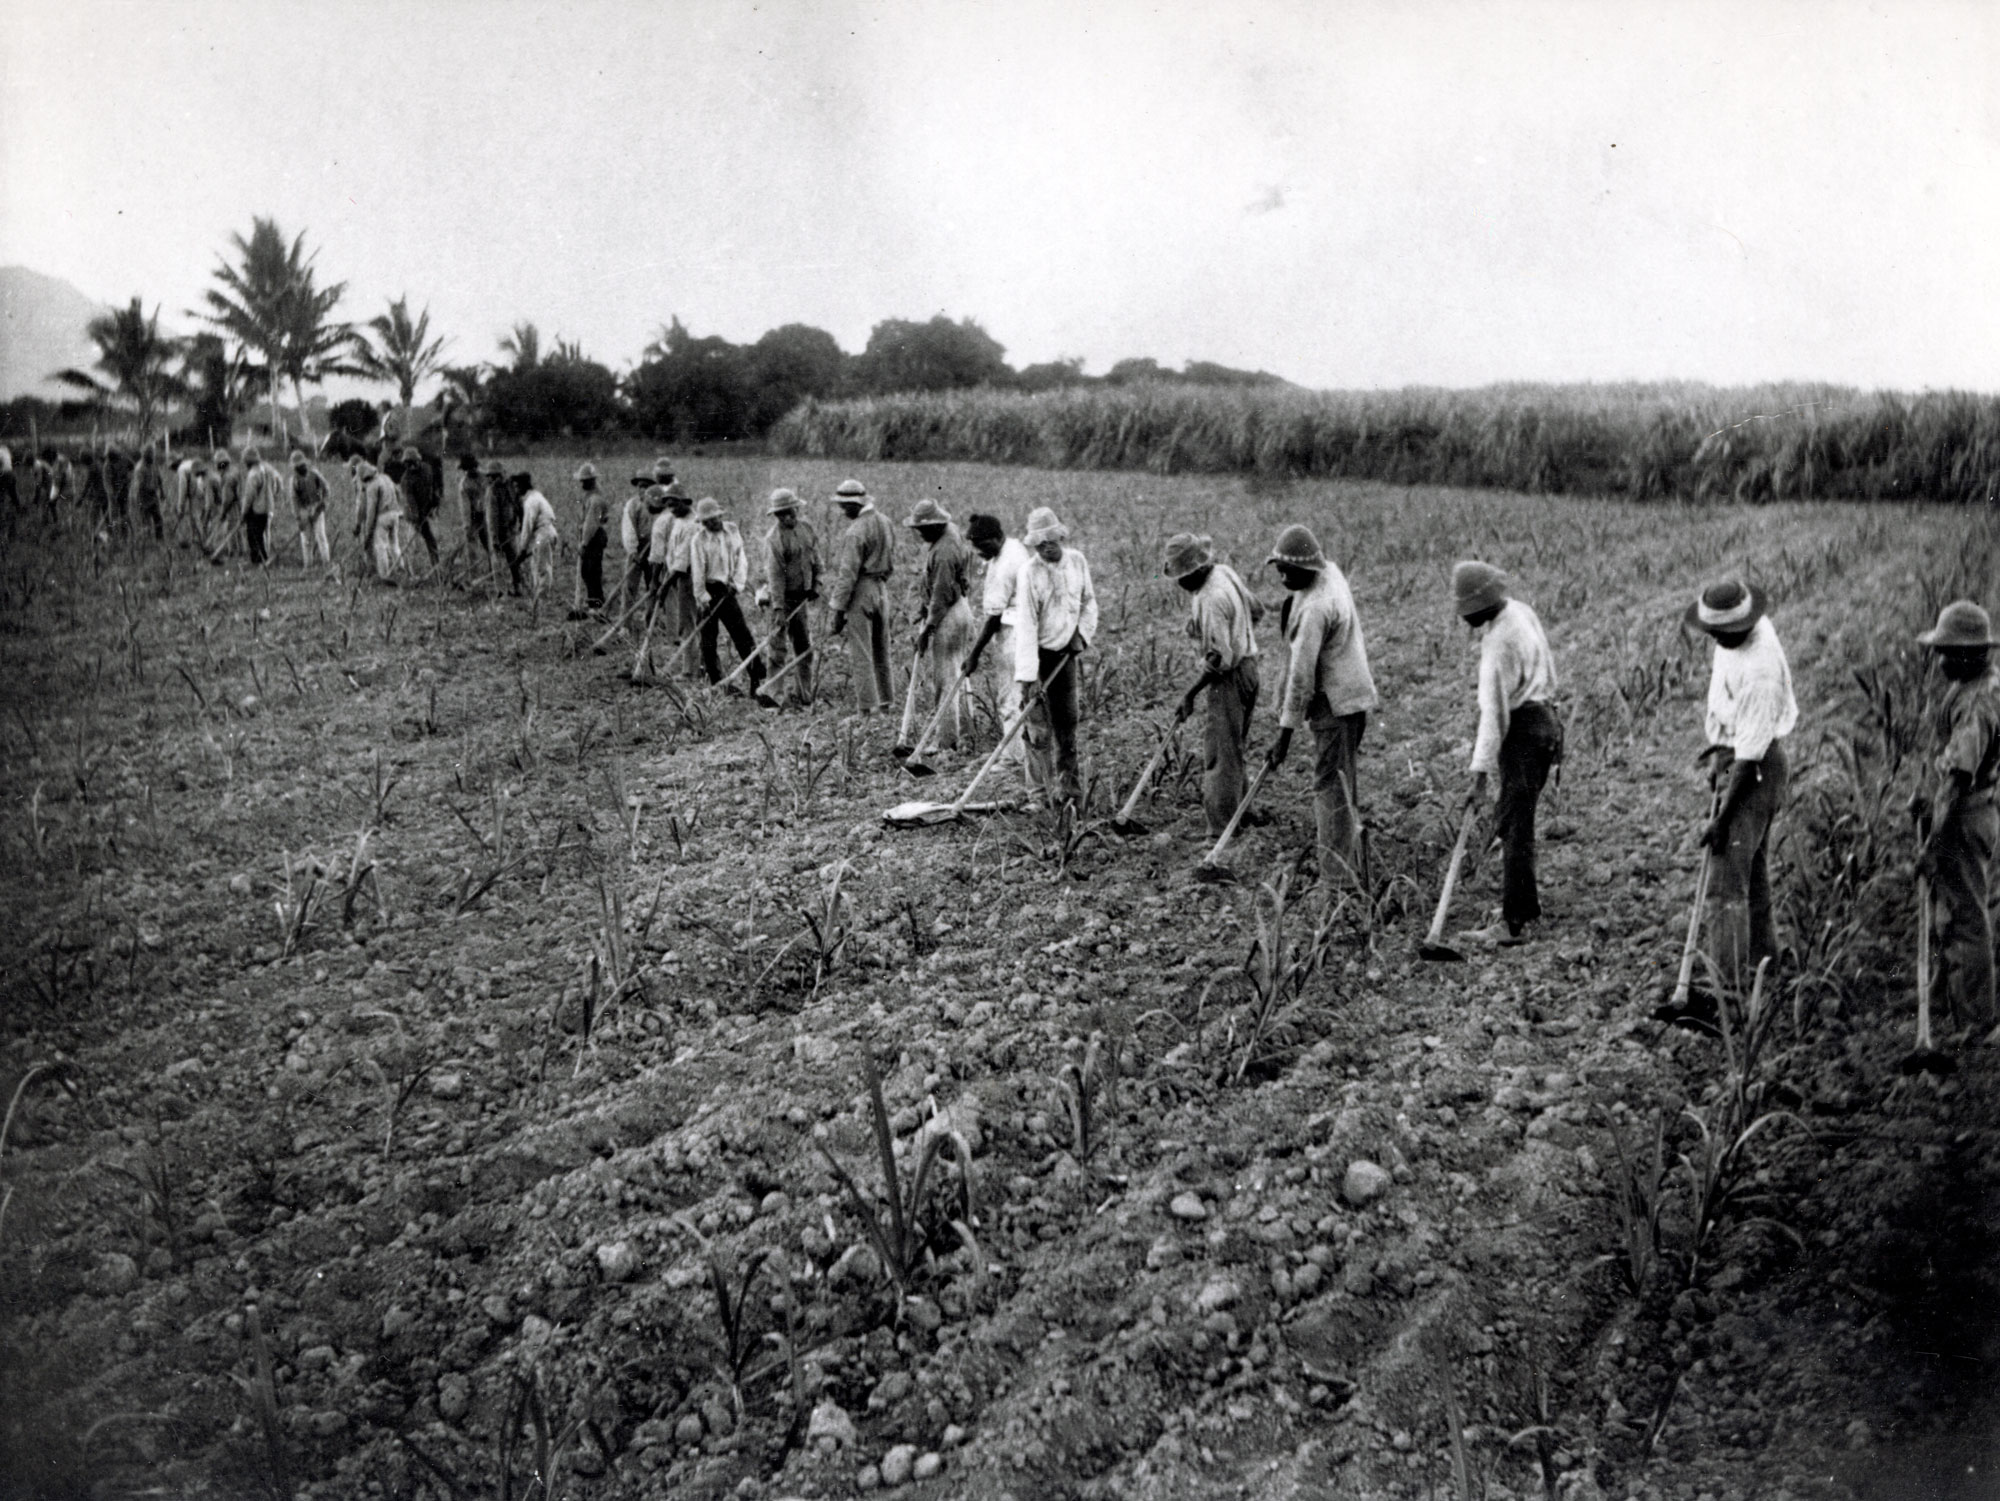 Australian South Sea Islanders hoeing a cane field in the Herbert River region, Queensland, 1902